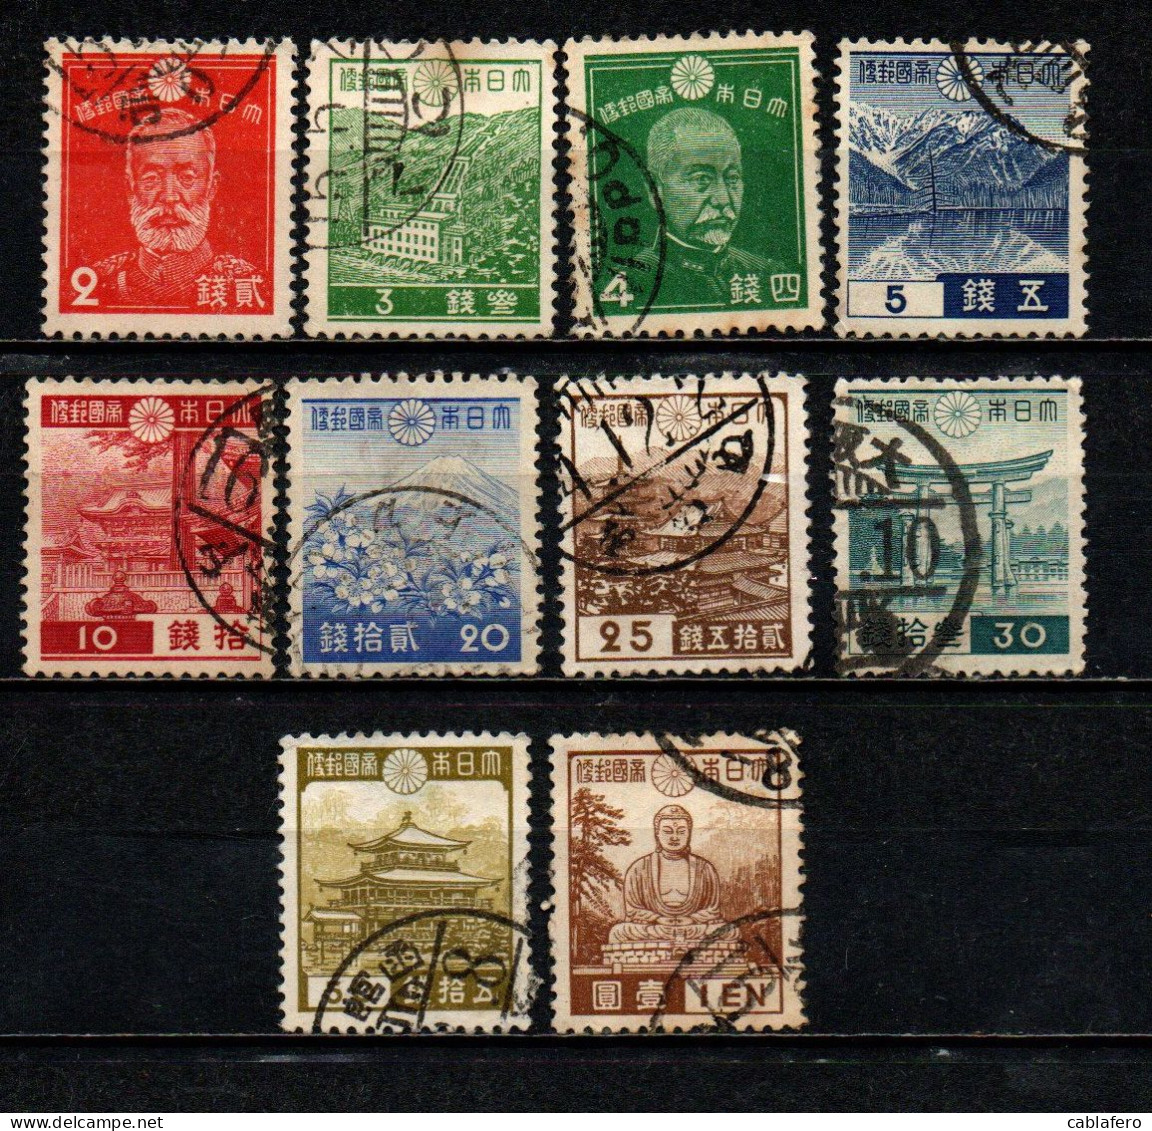 GIAPPONE - 1937 - IMMAGINI DEL GIAPPONE - USATI - Used Stamps